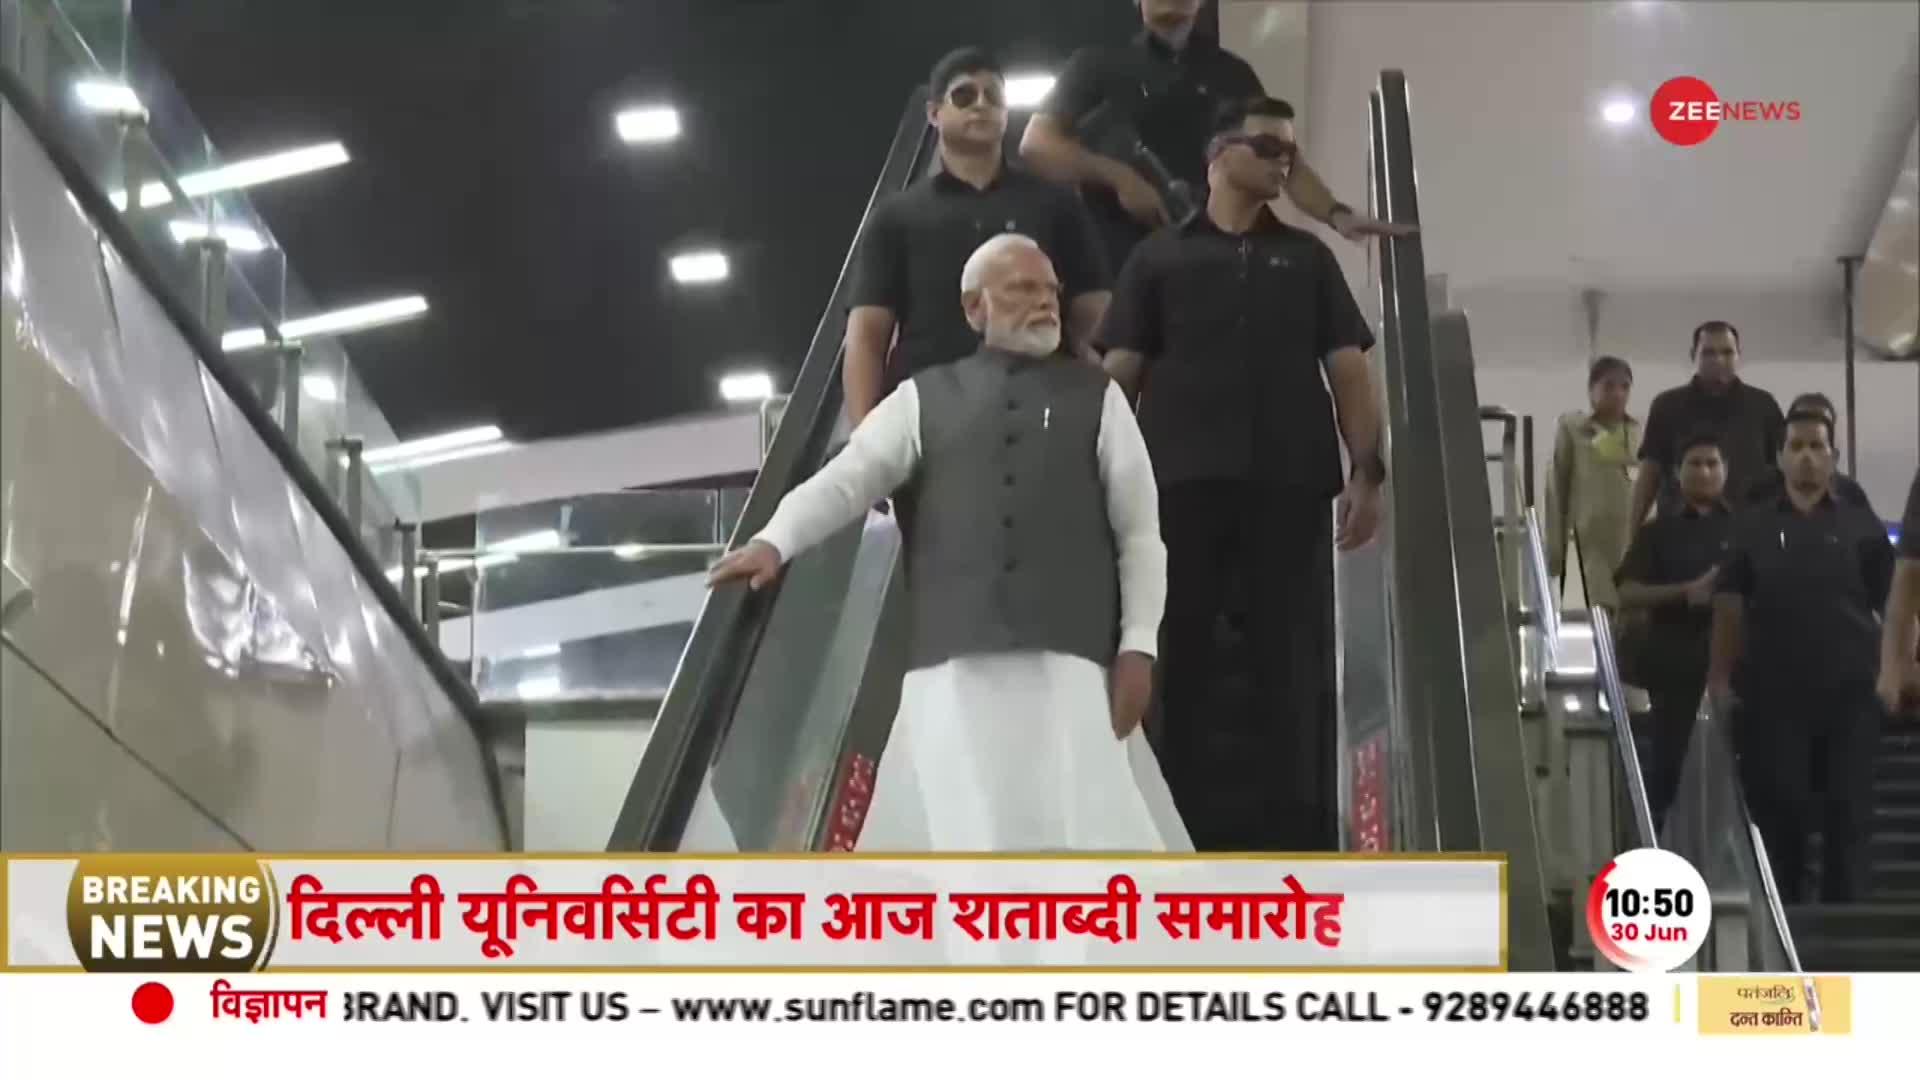 PM Modi DU Visit: Metro में Delhi University के Shatabdi Samaroh में पहुंचेंगे प्रधानमंत्री मोदी